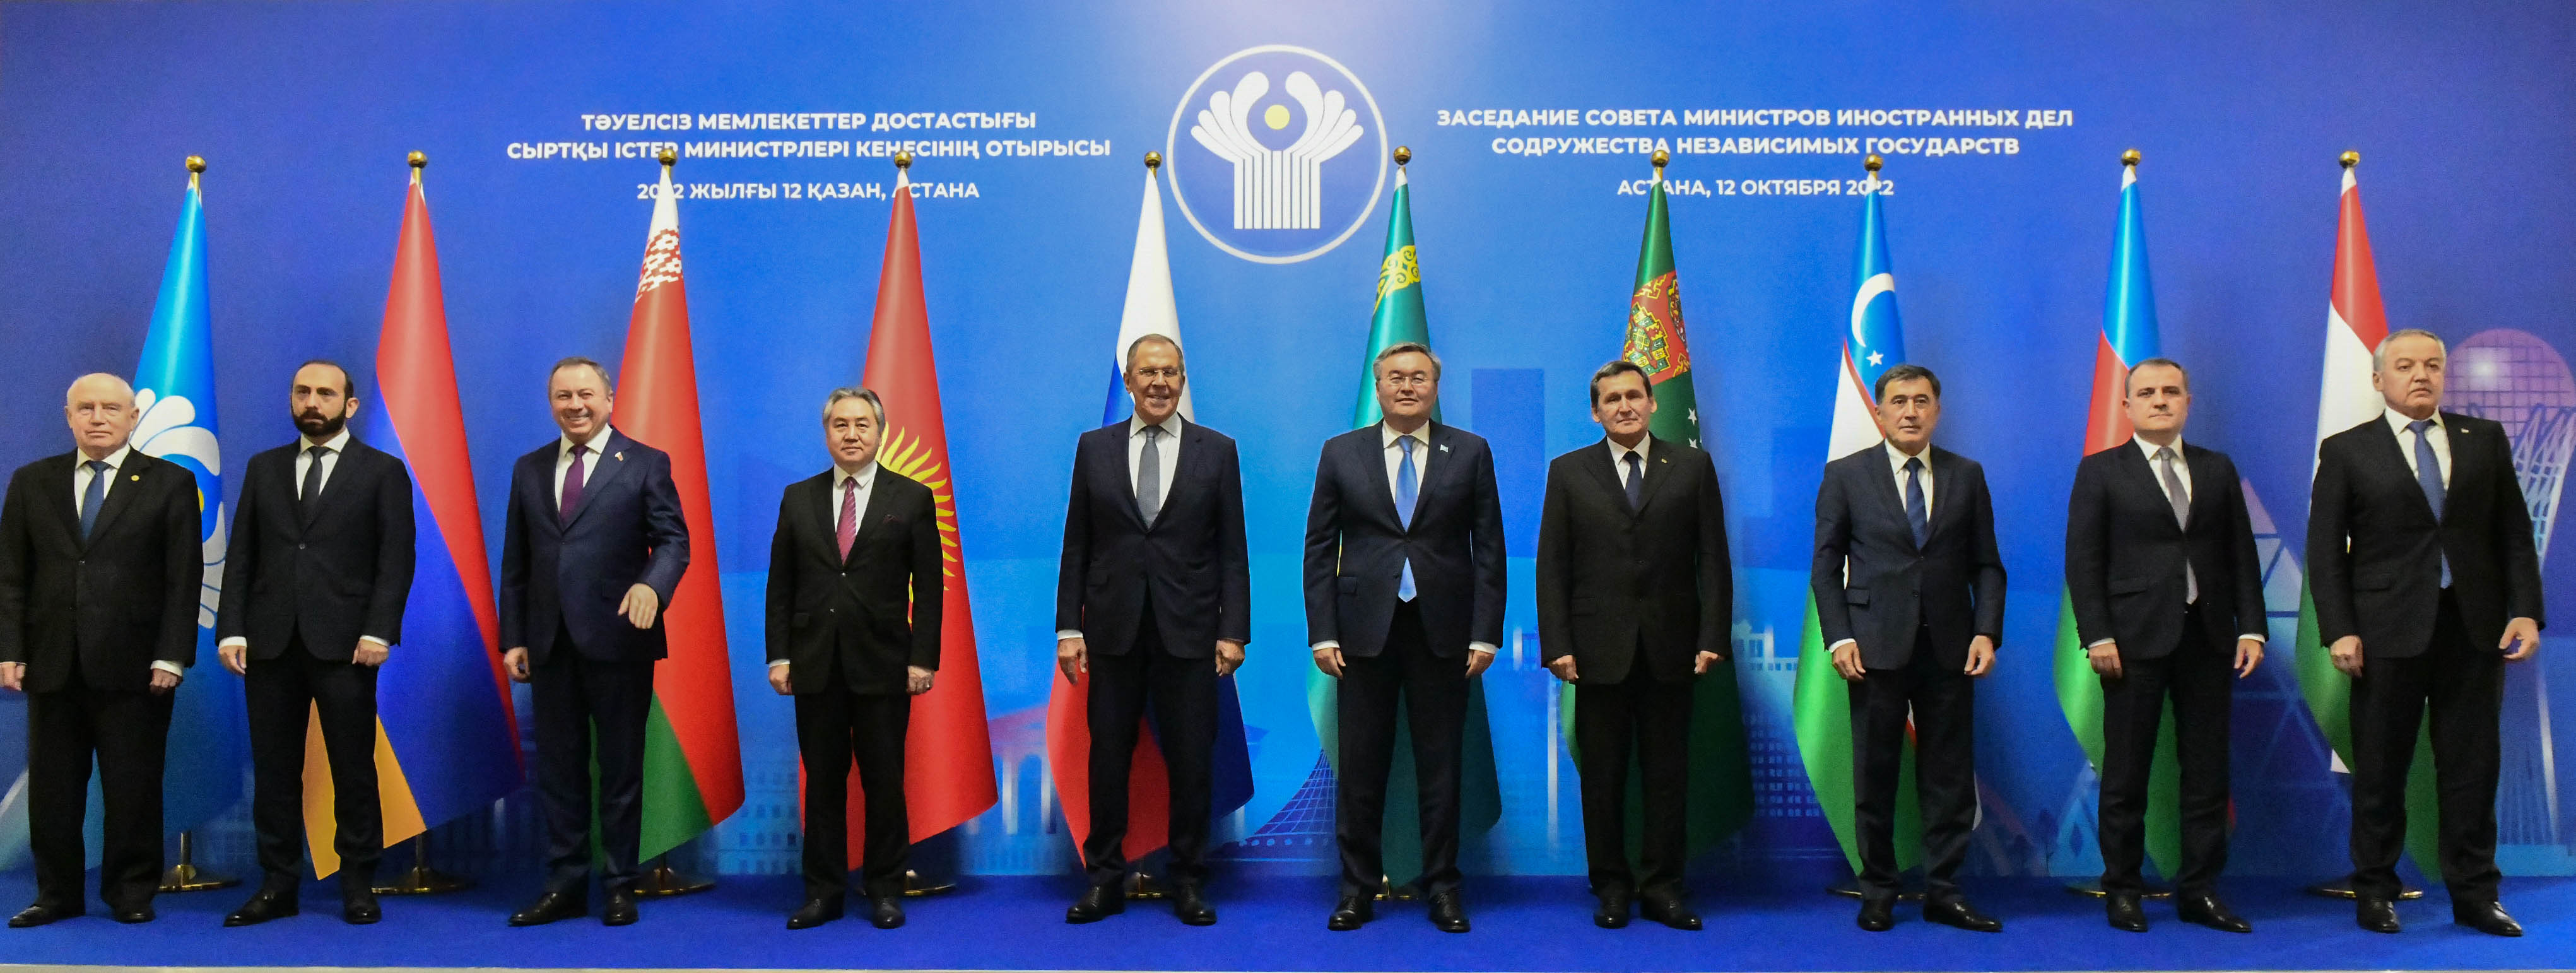 Под председательством Казахстана прошло заседание Совета министров иностранных дел СНГ